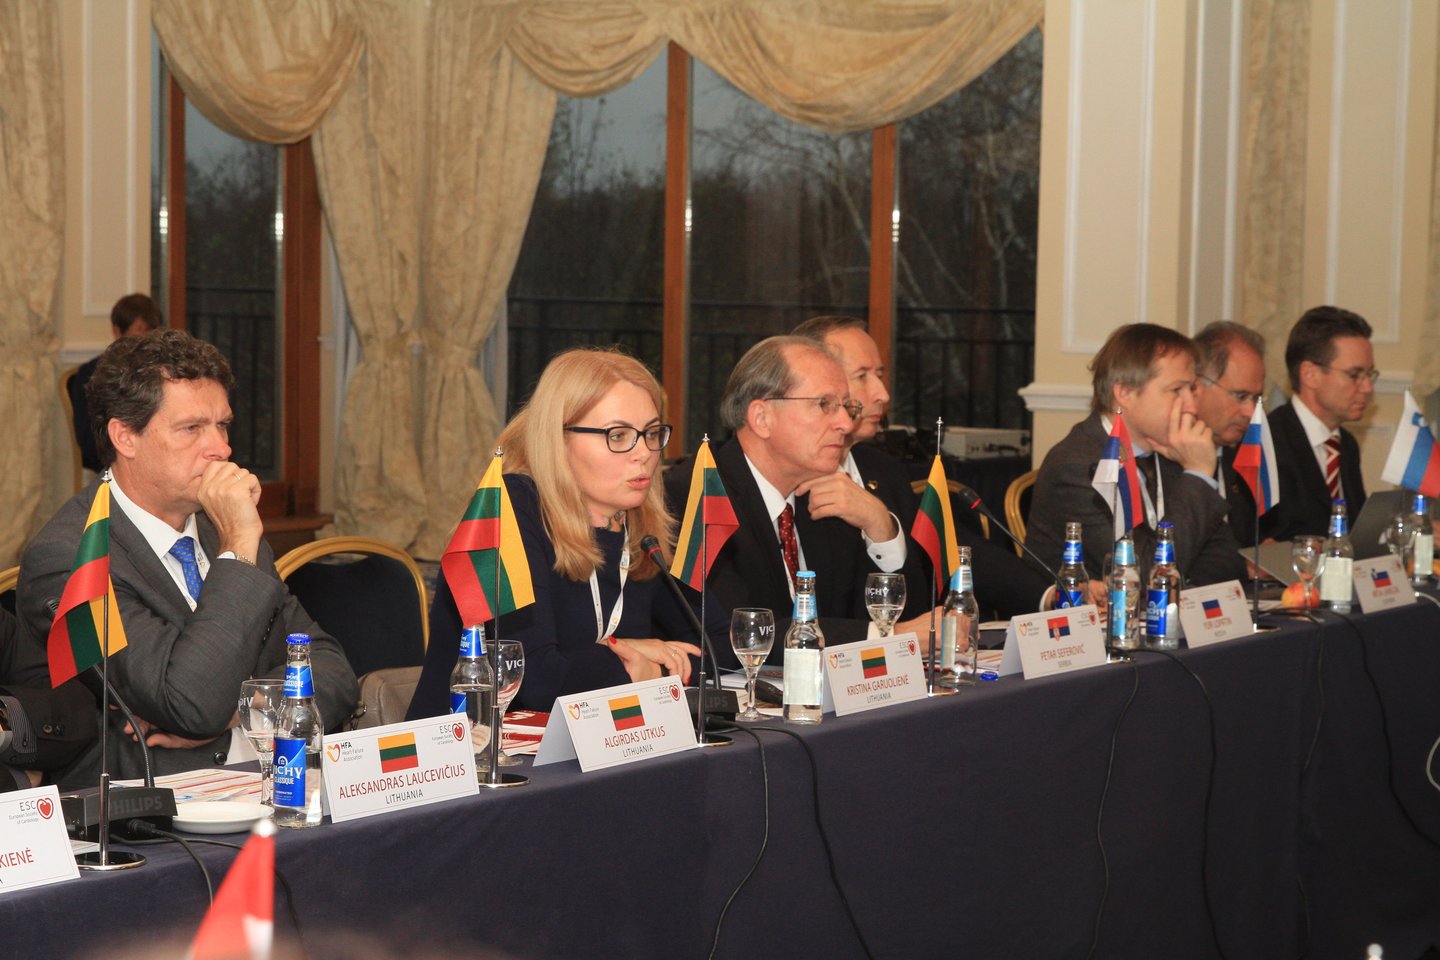   Savaitgalį Vilniuje vykusio aukščiausio lygio Europos Nacionalinių širdies asociacijų atstovų susitikimo akimirkos.